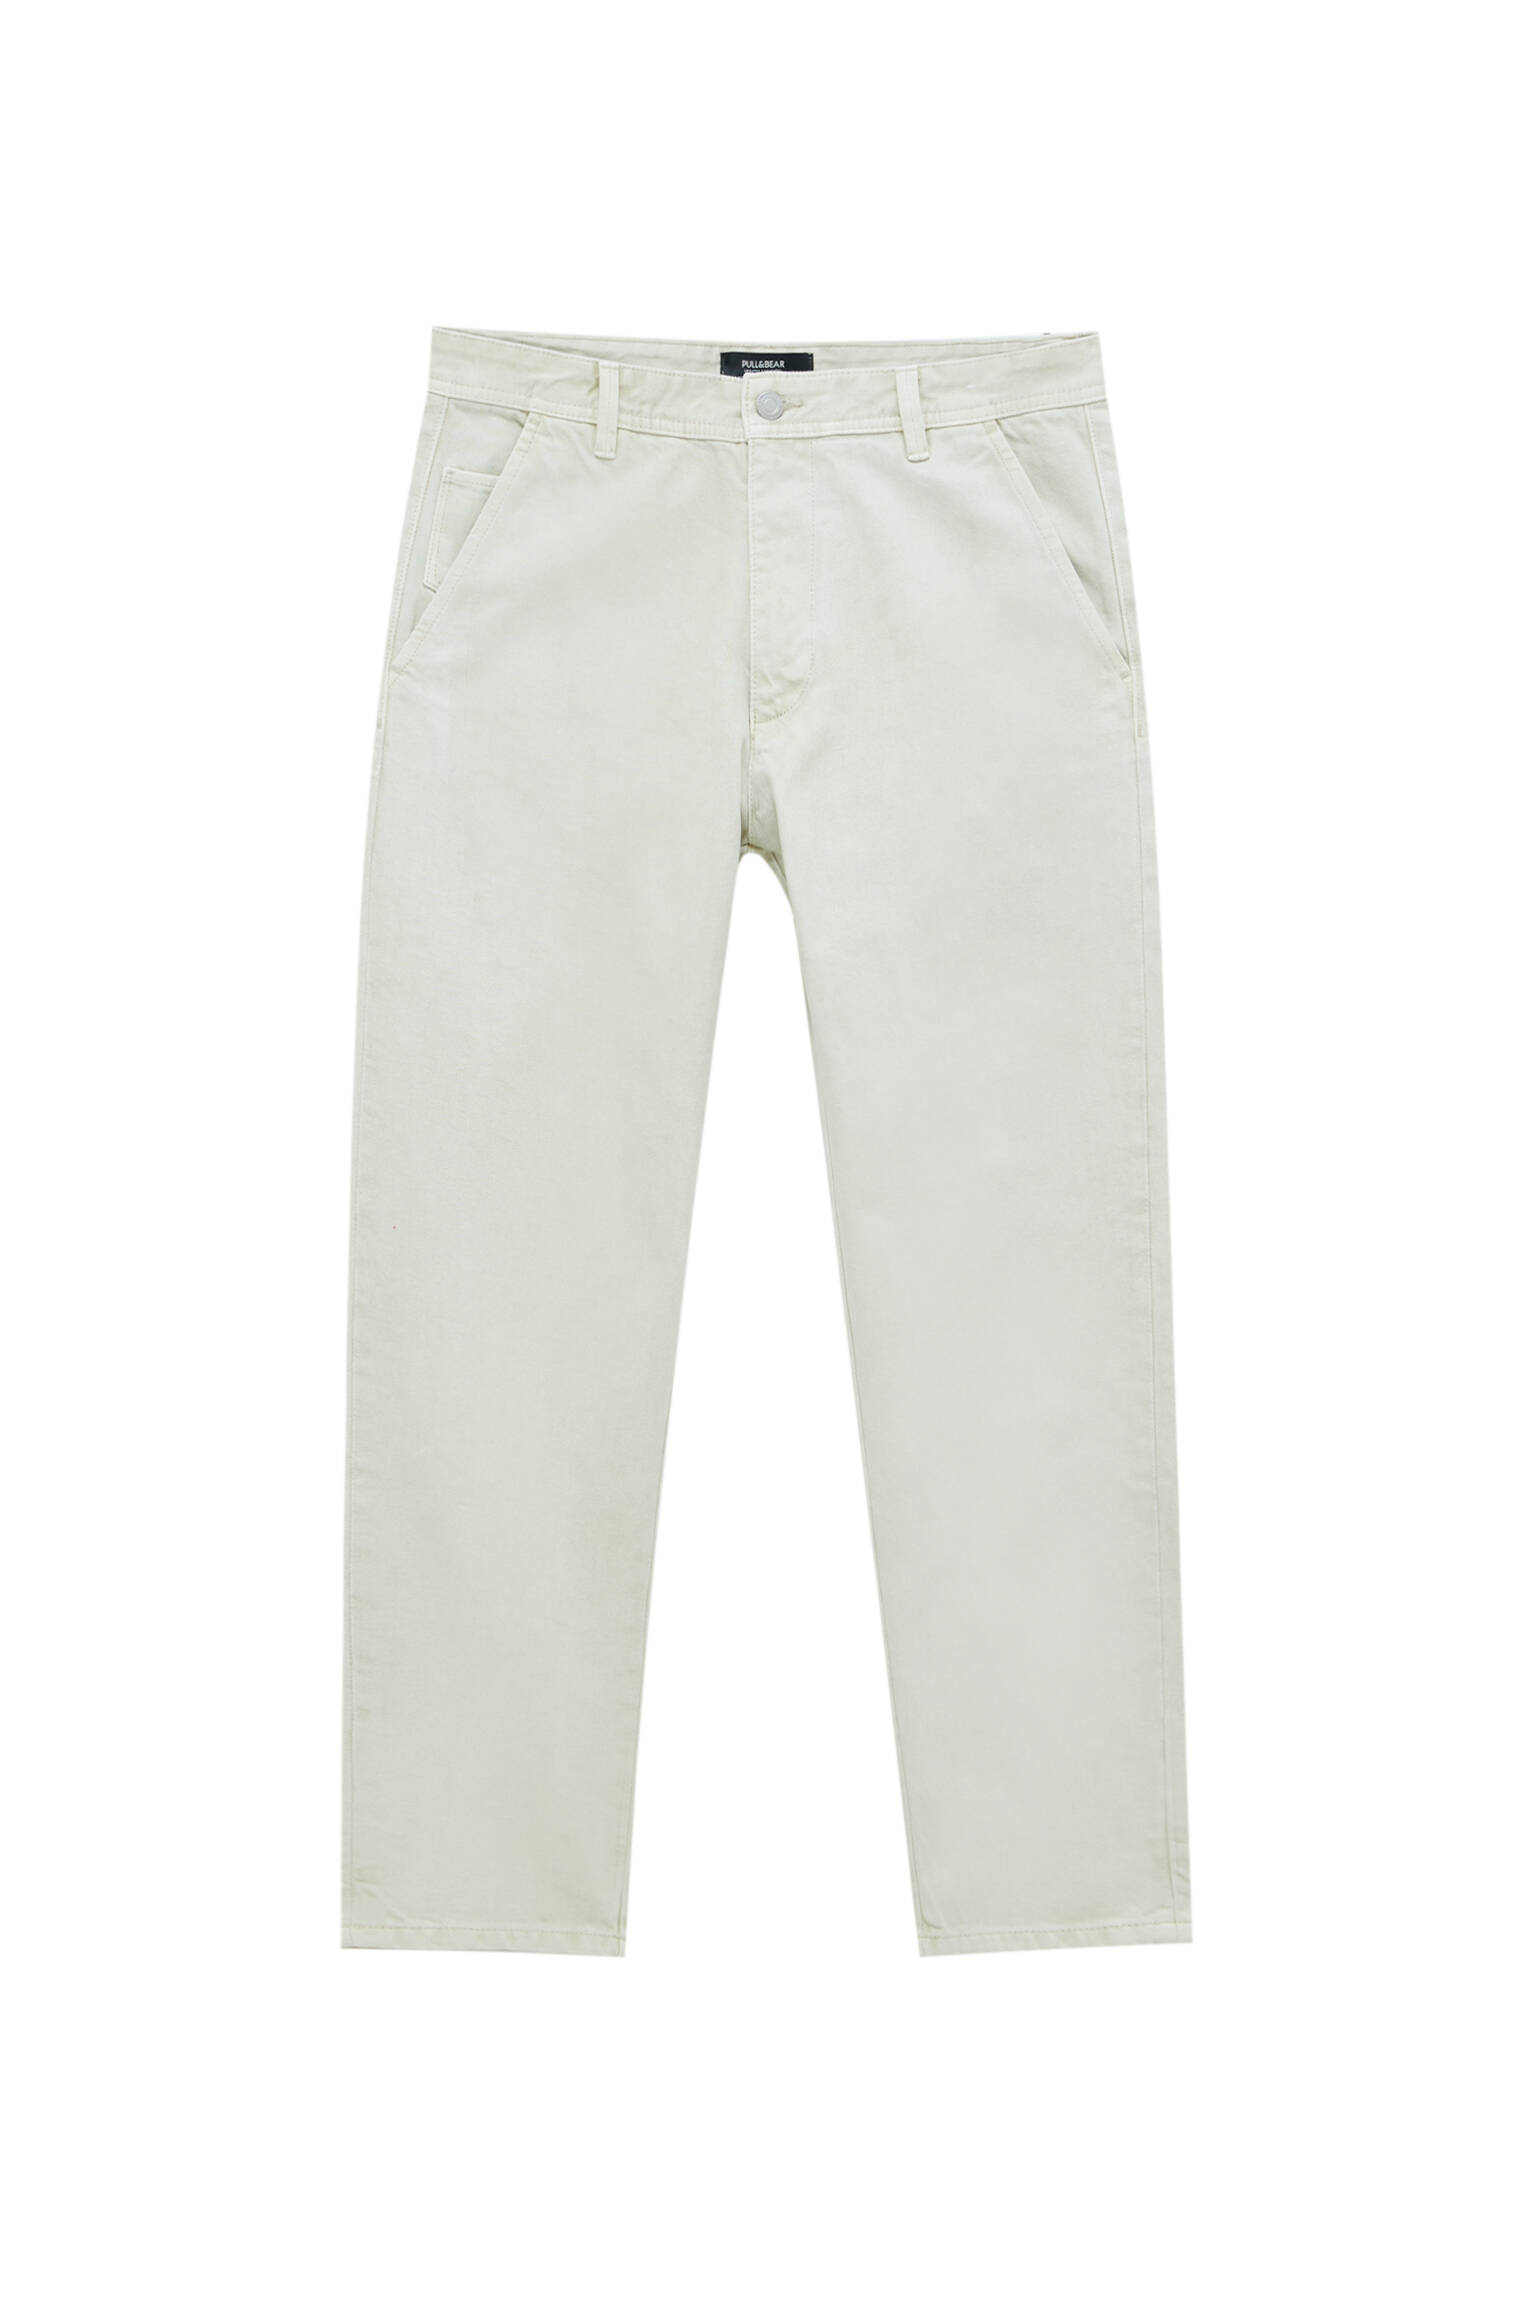 Pull&bear Homme Pantalon Chino Standard Fit 100 % Coton Avec Poches, Passants De Ceinture à La Taille, Fermeture Éclair Et Bouton. Écru 46